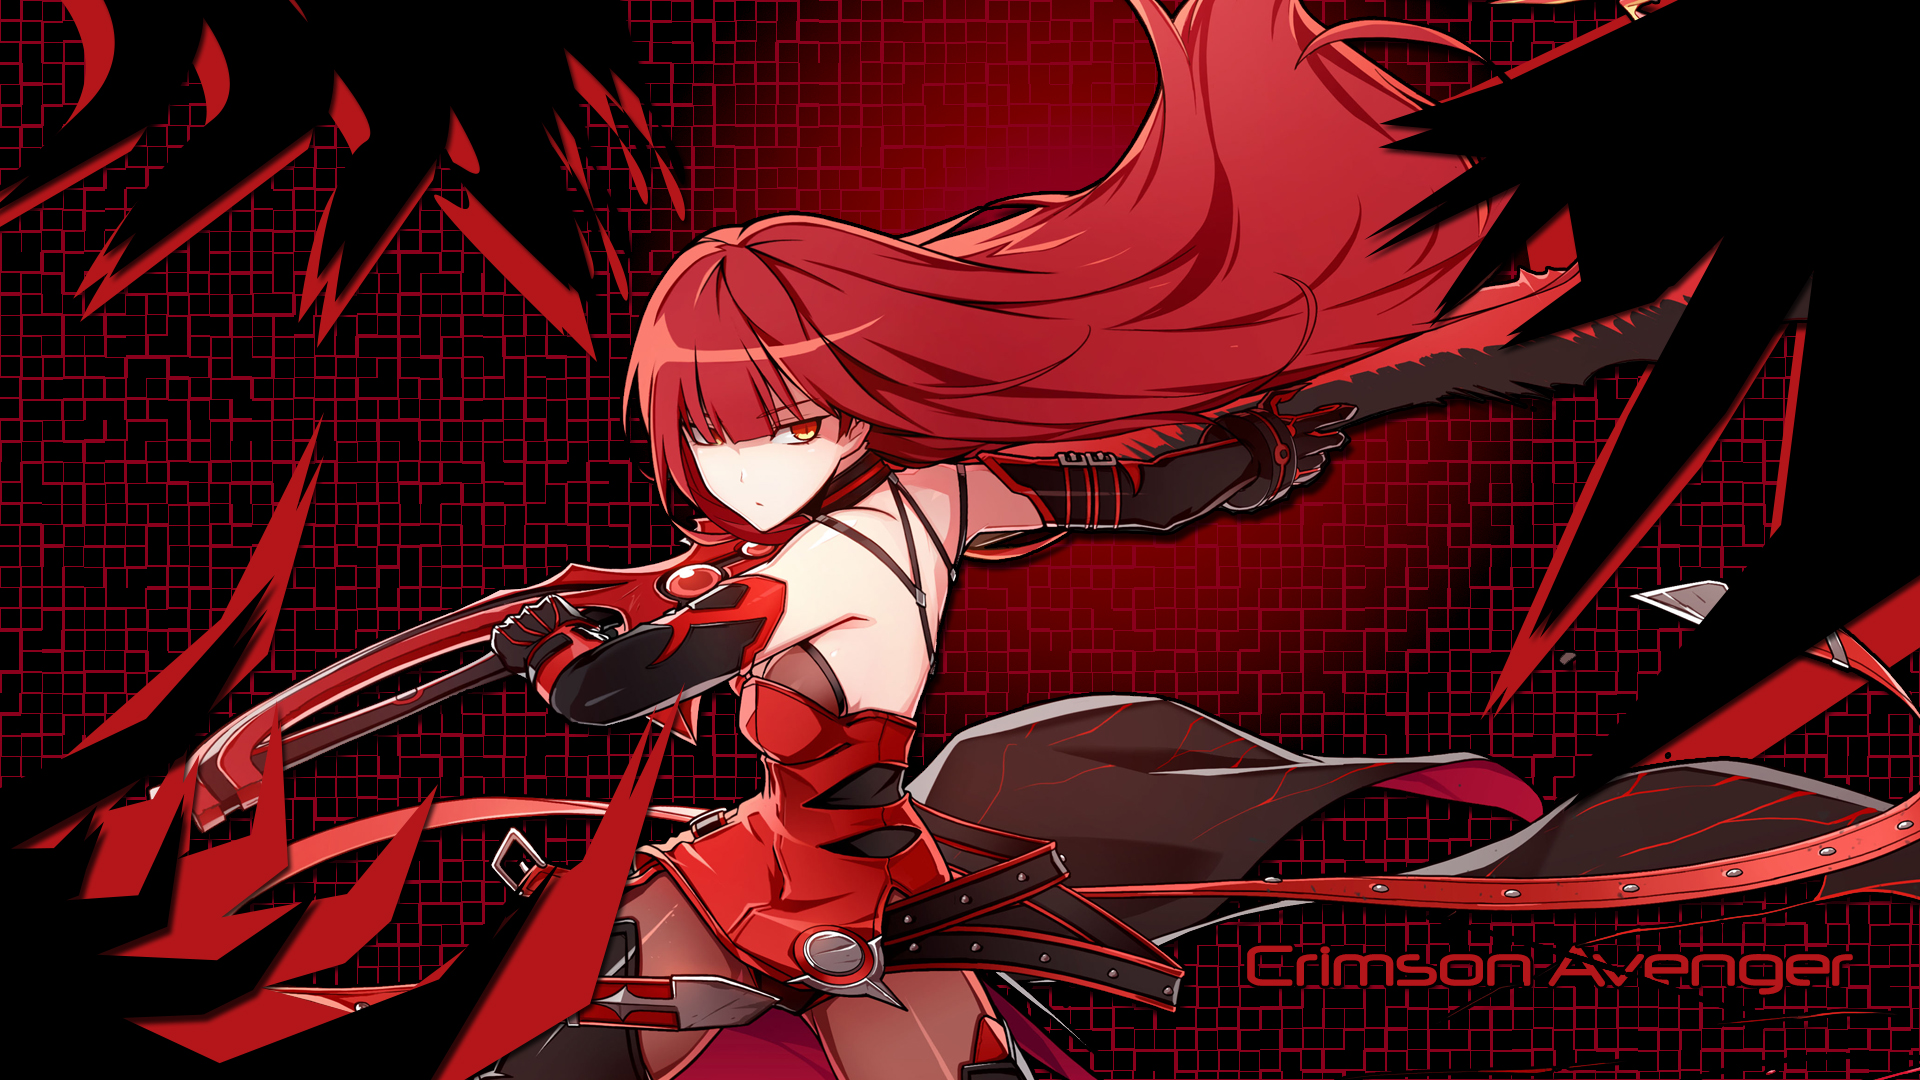 Crimson Avenger #5